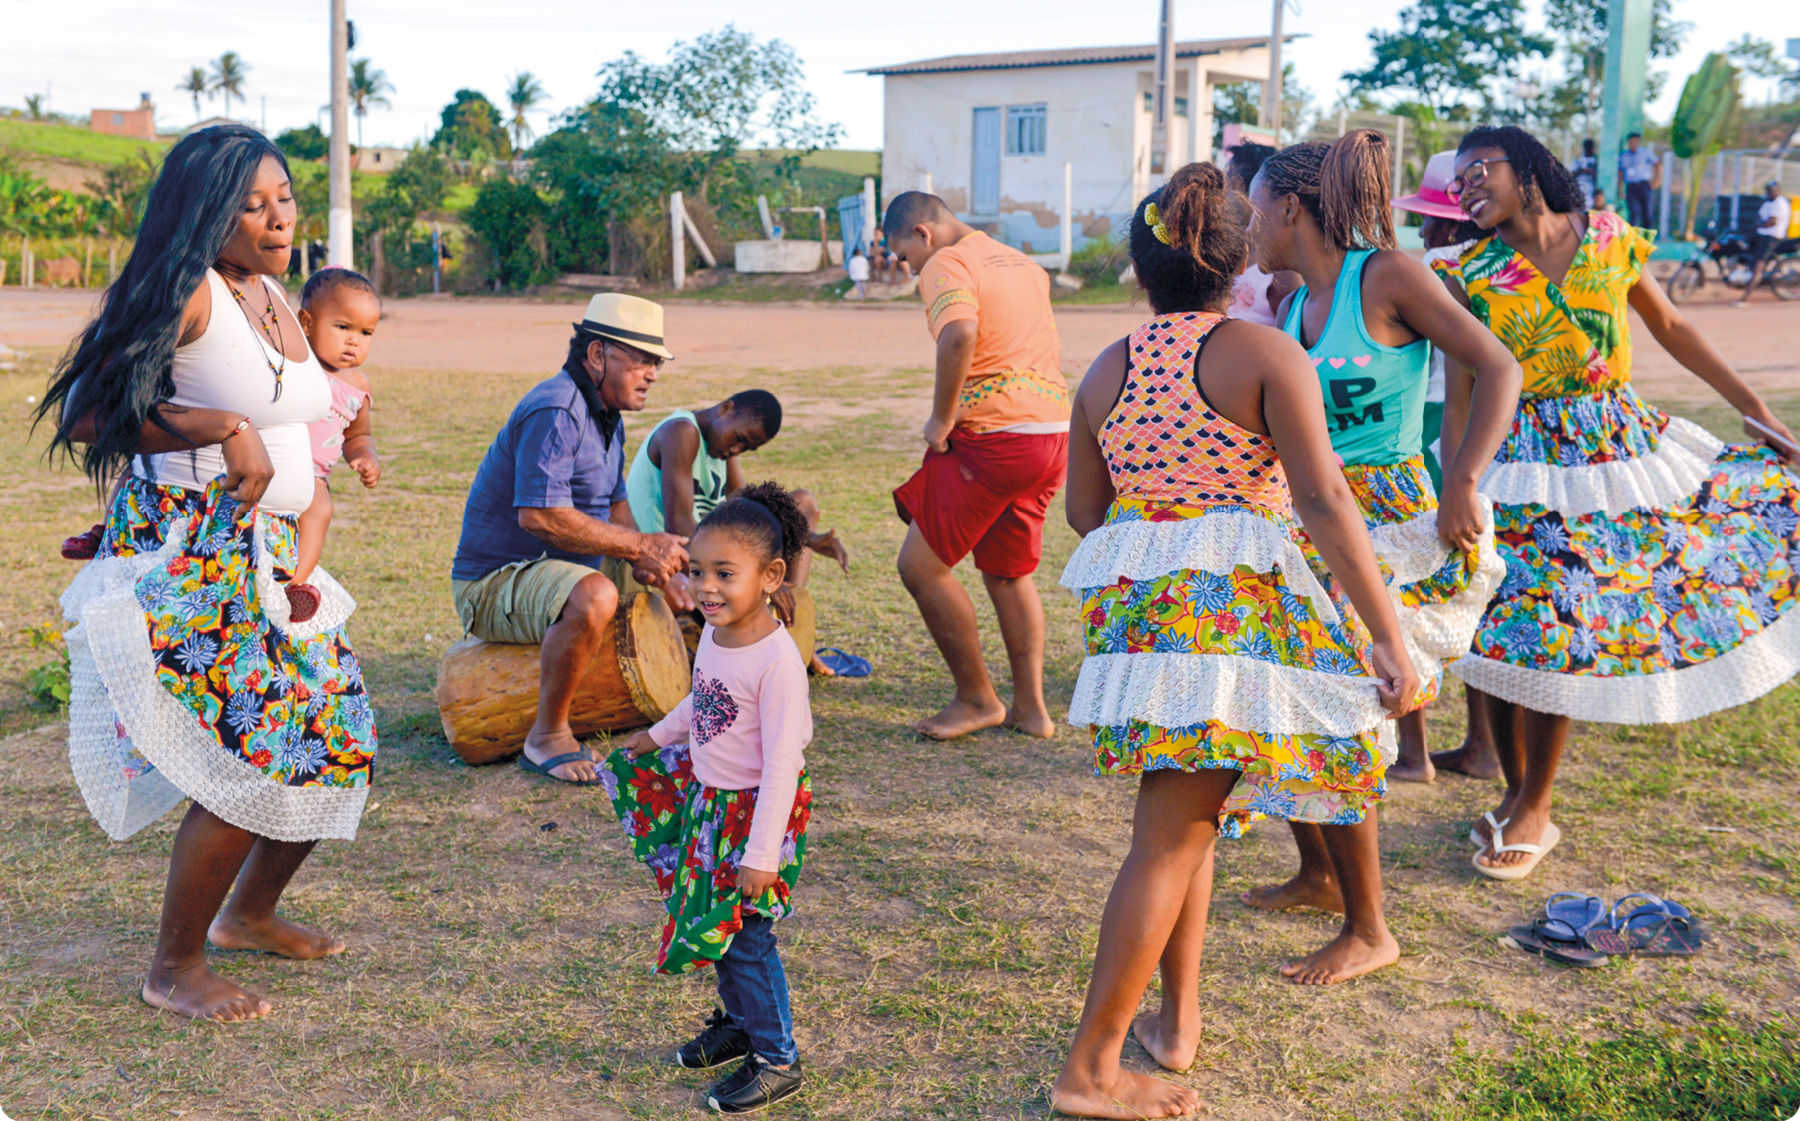 Fotografia. Mulheres e crianças negras, com saias estampadas e coloridas, dançando. Ao fundo, um homem sentado sobre um tambor.